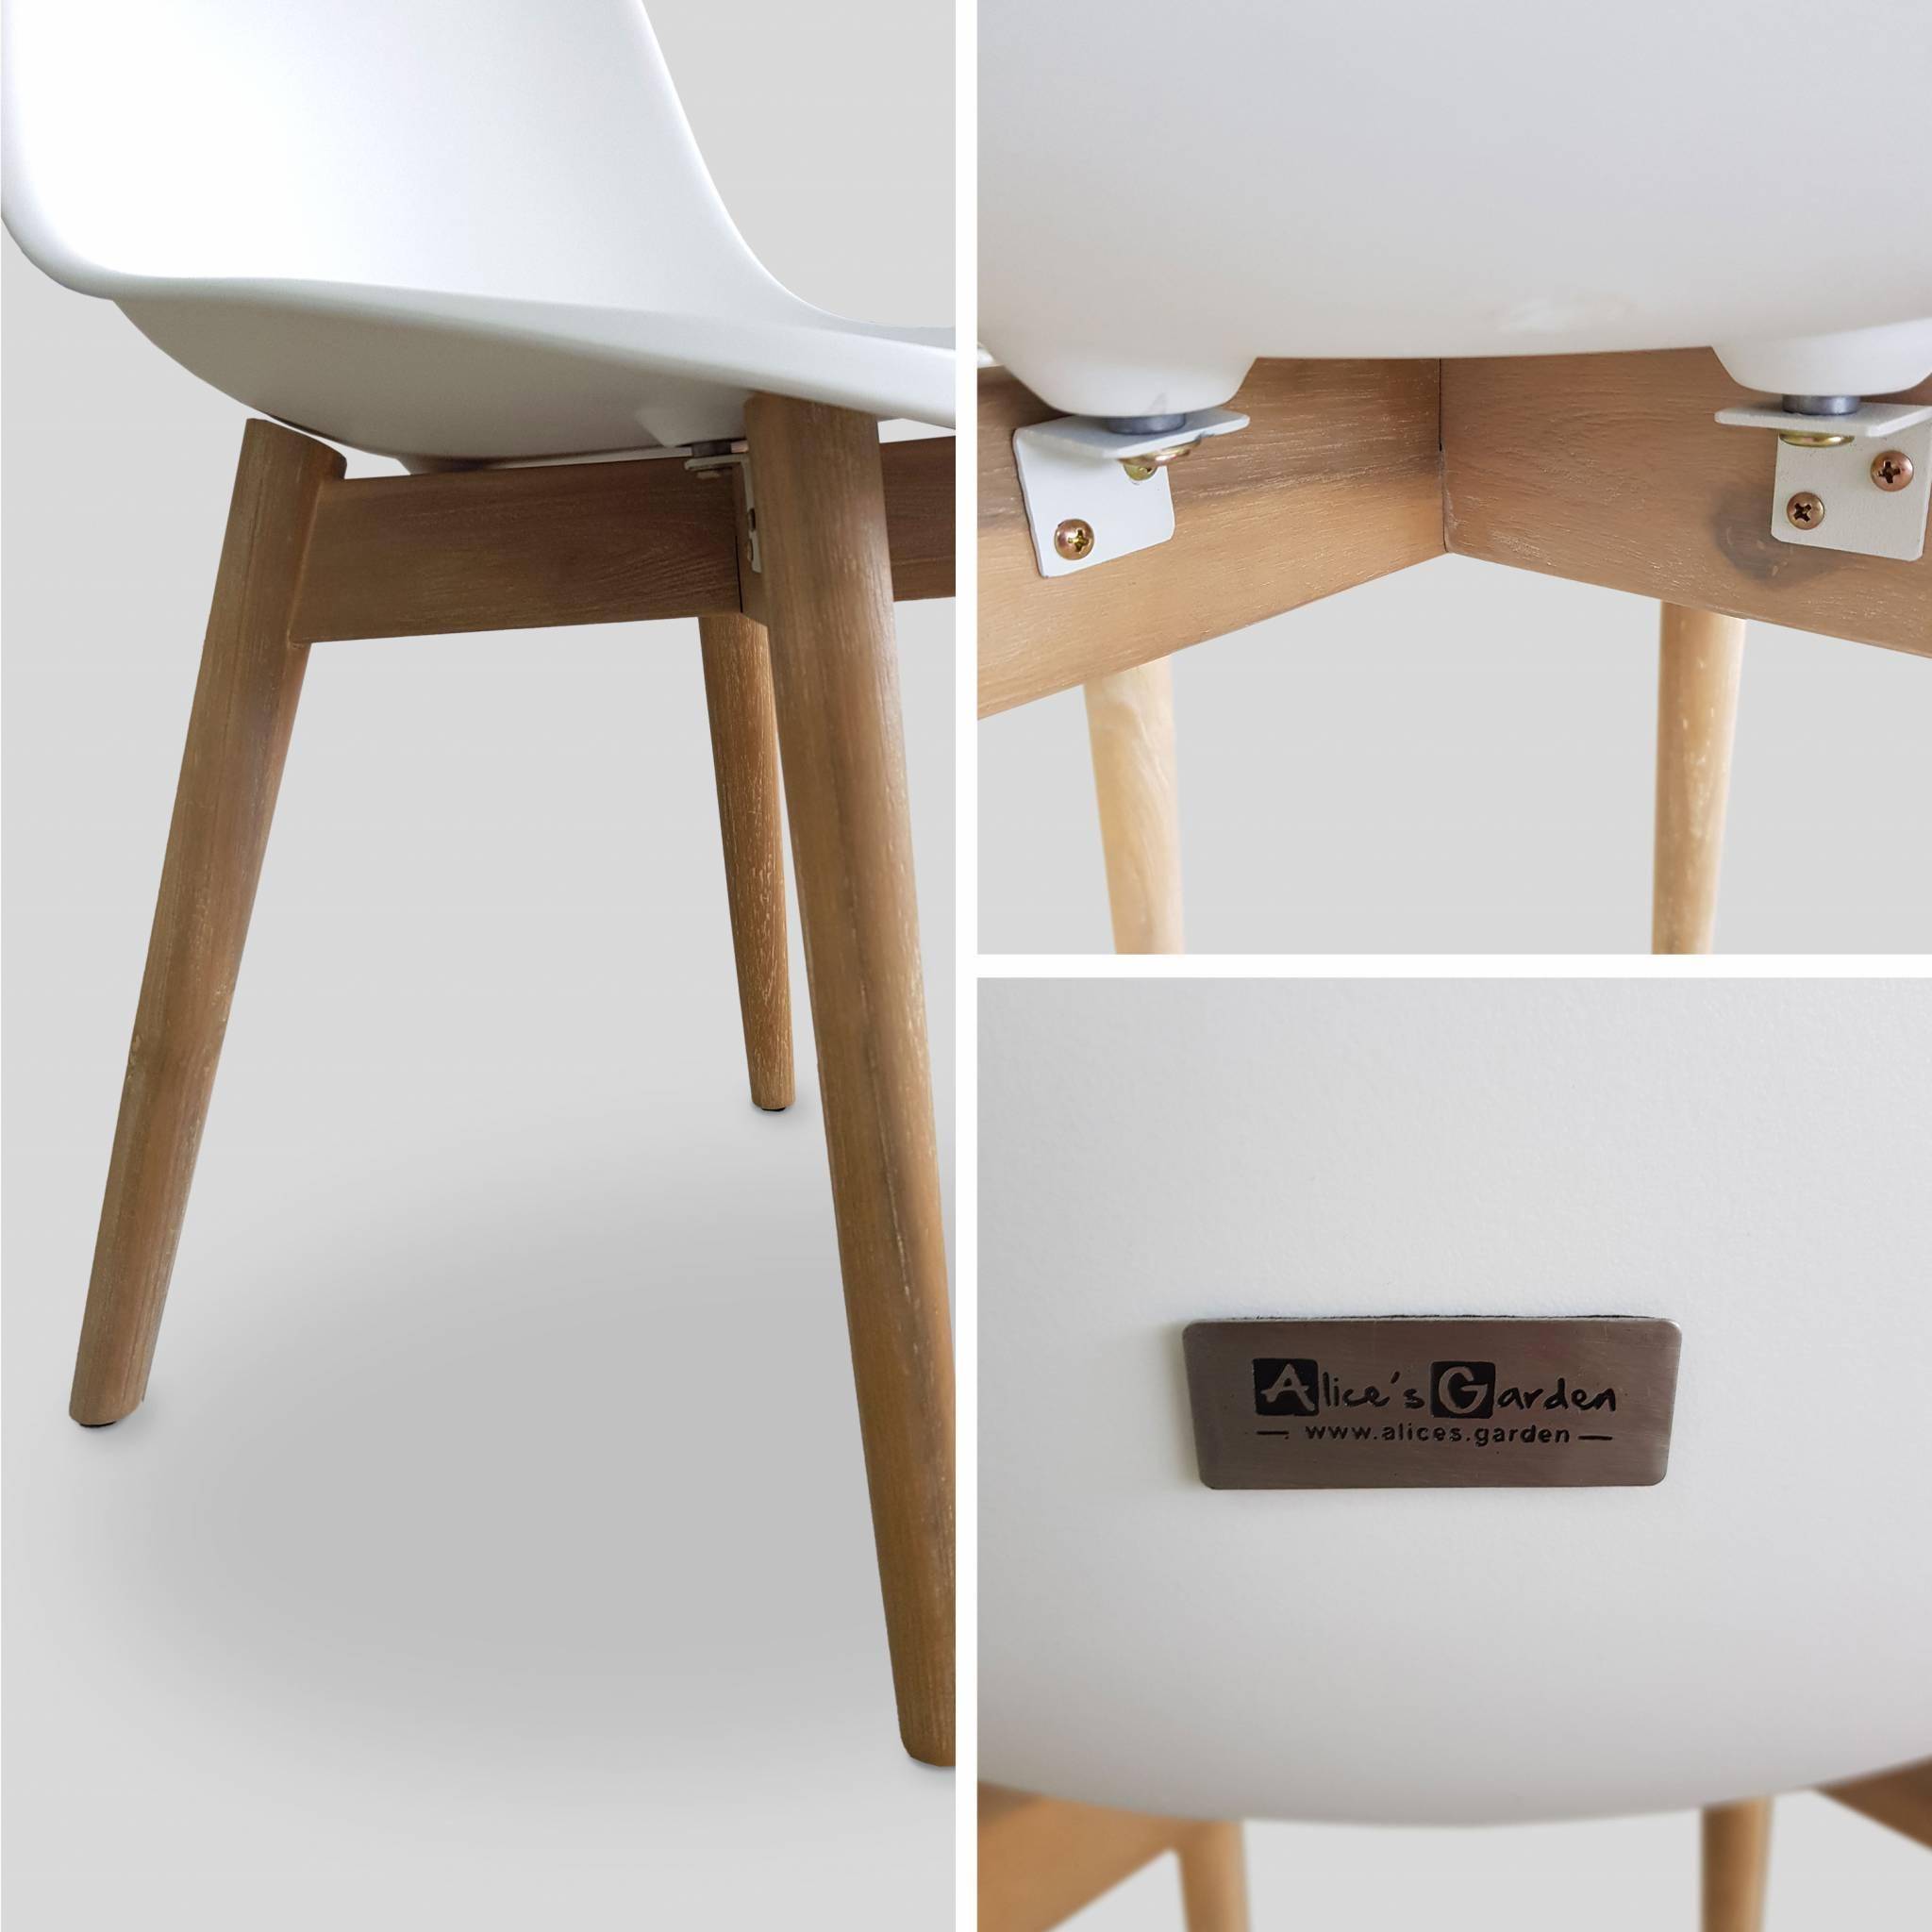 4er Set skandinavische Stühle Penida, aus Akazienholz und weißem Kunstharz gespritzt, innen/außen Photo4